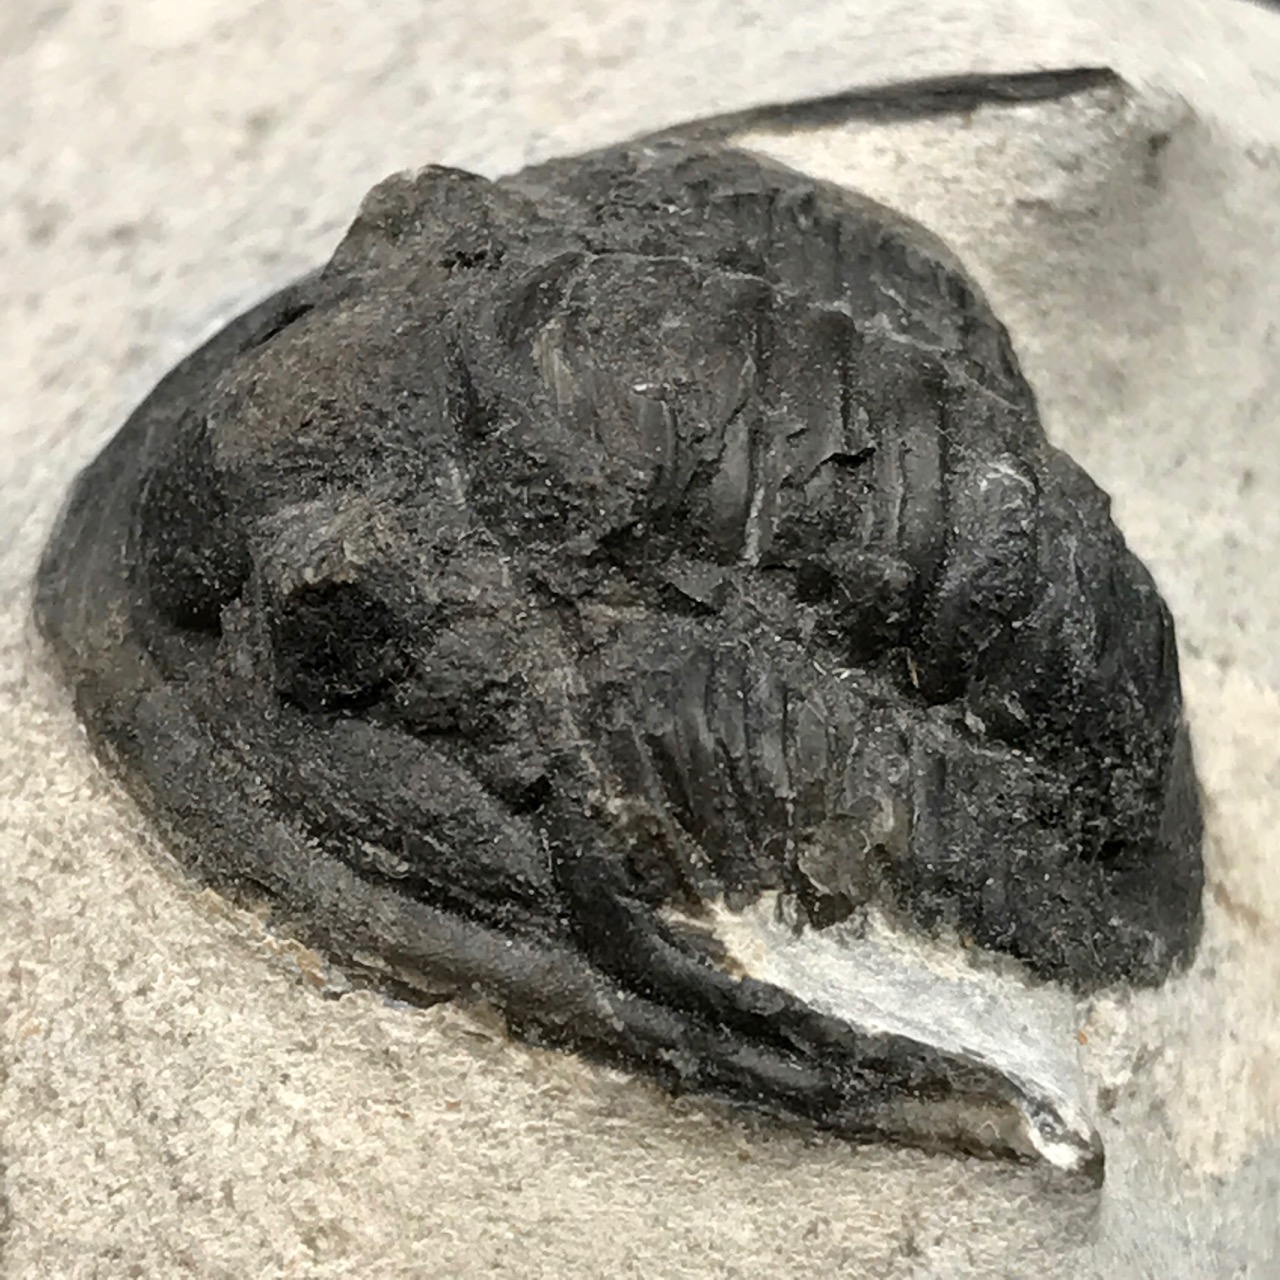 Trilobite Cornuproetus sur gangue du Moroc (réf tr19)